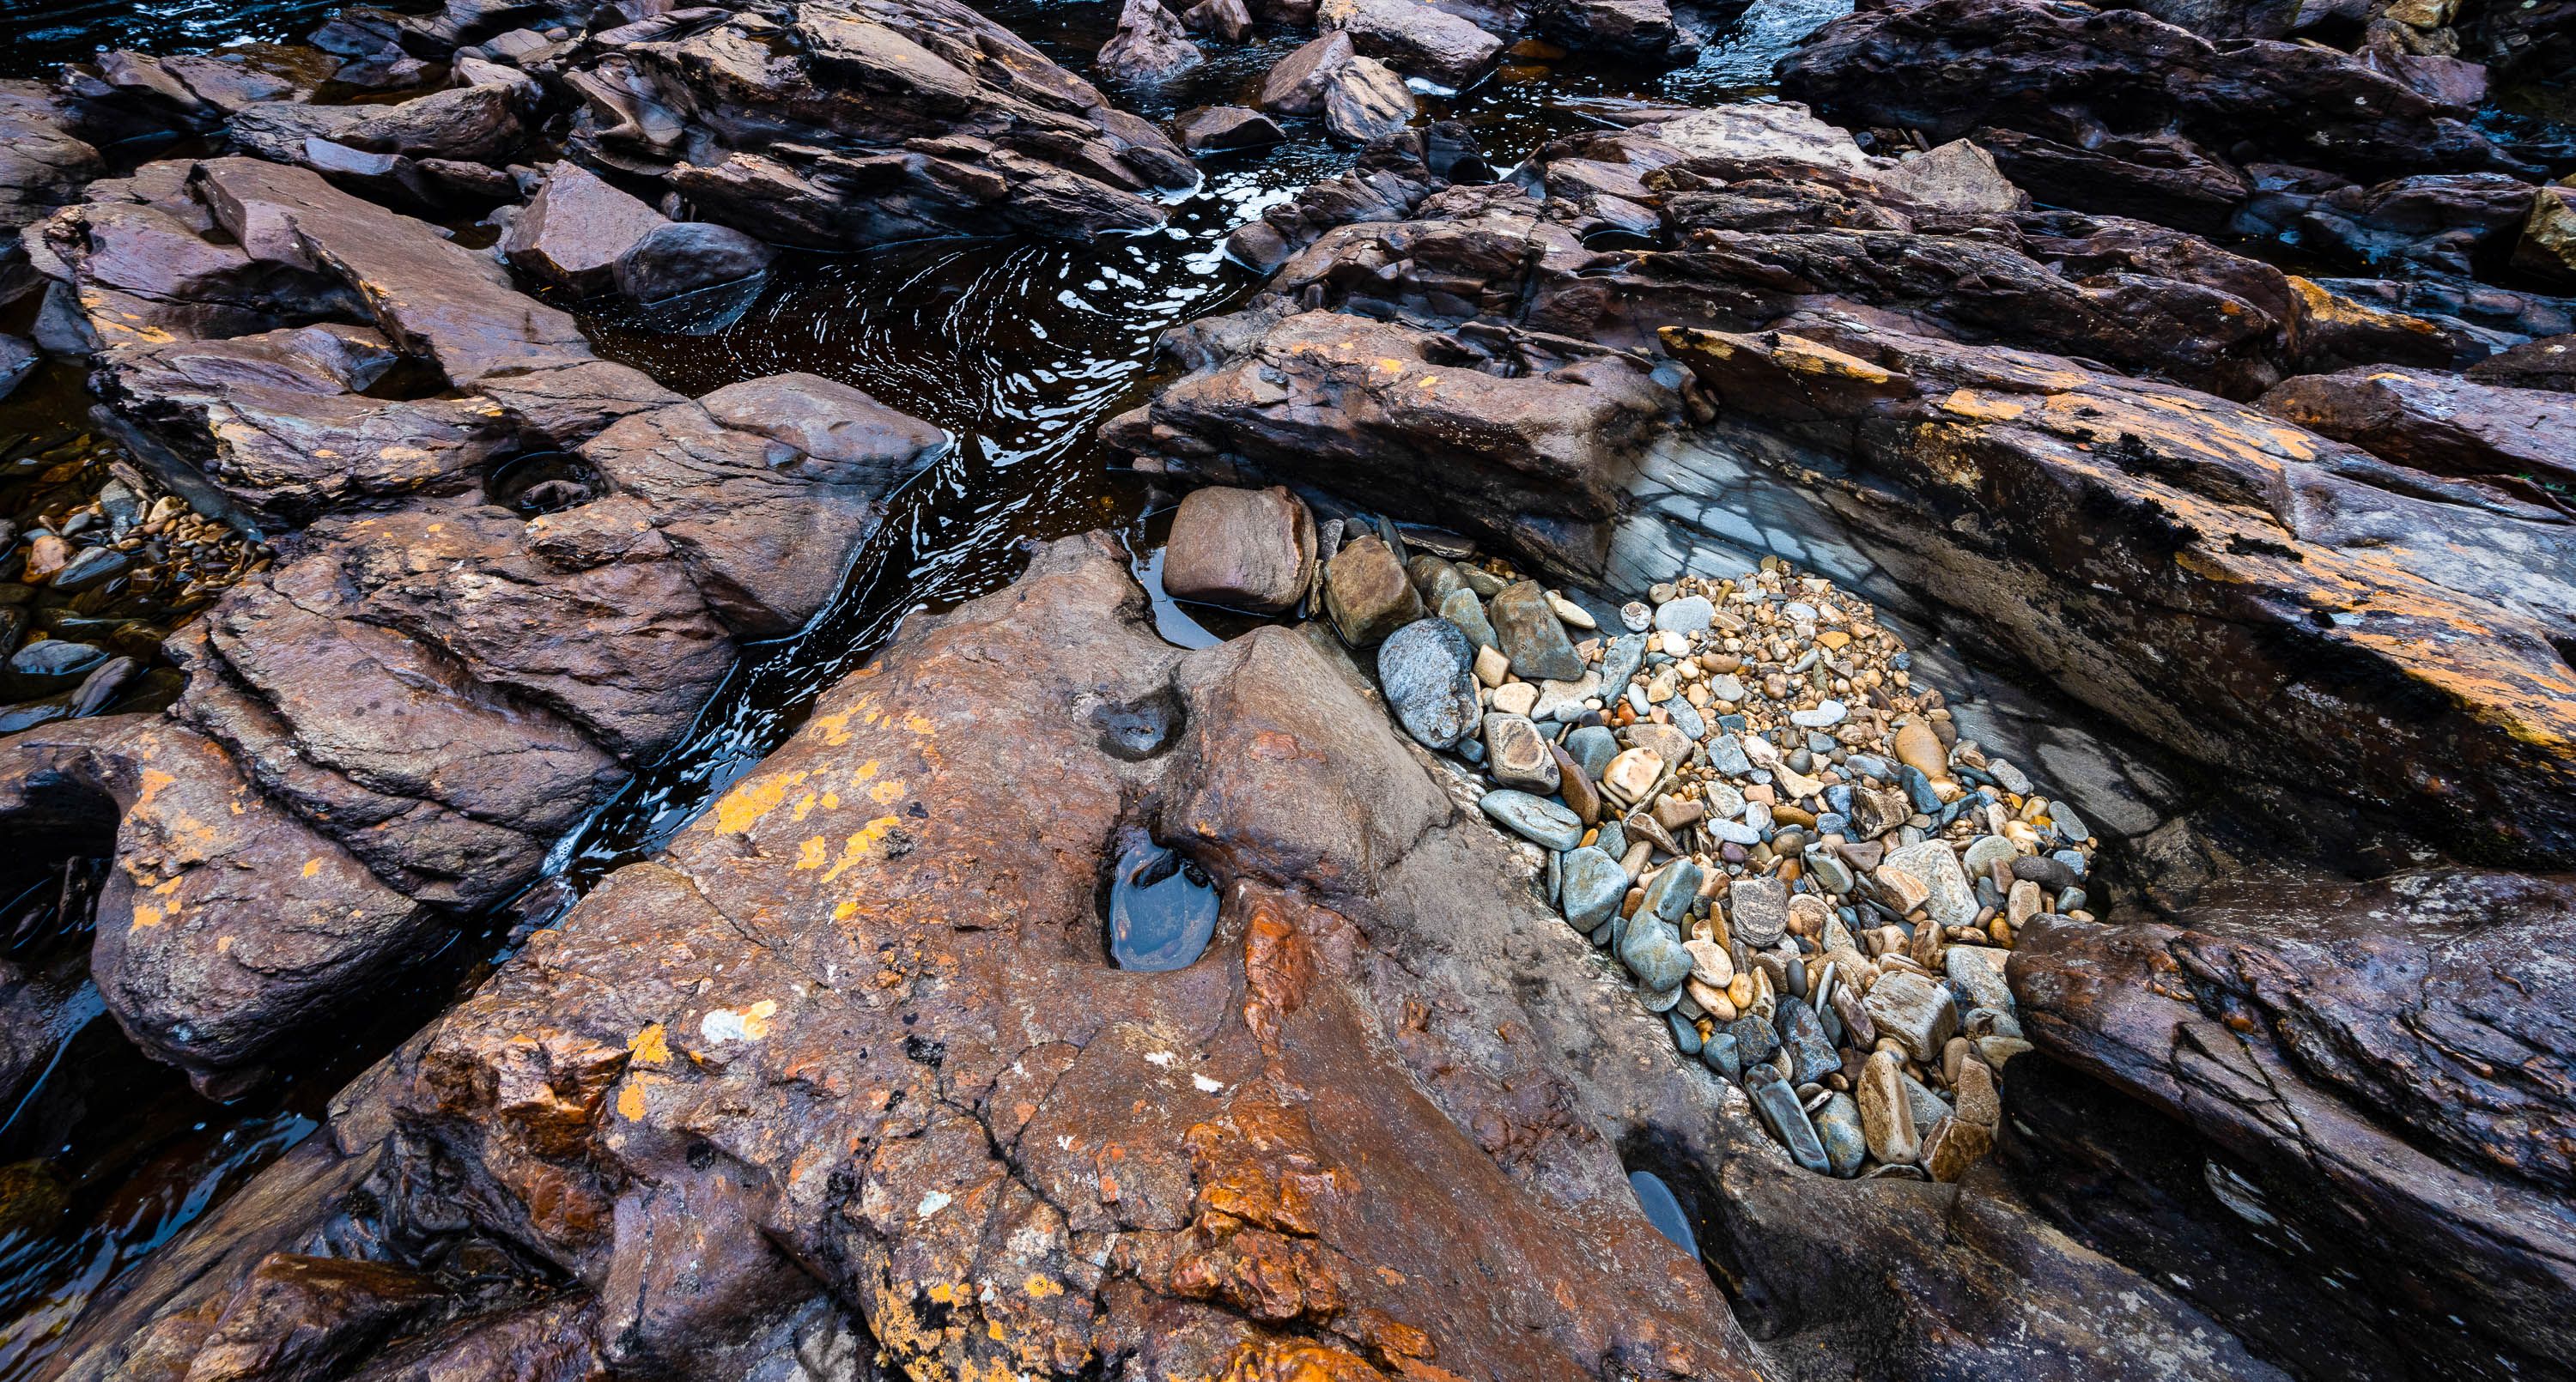 The Franklin River rock details #6, Tasmania